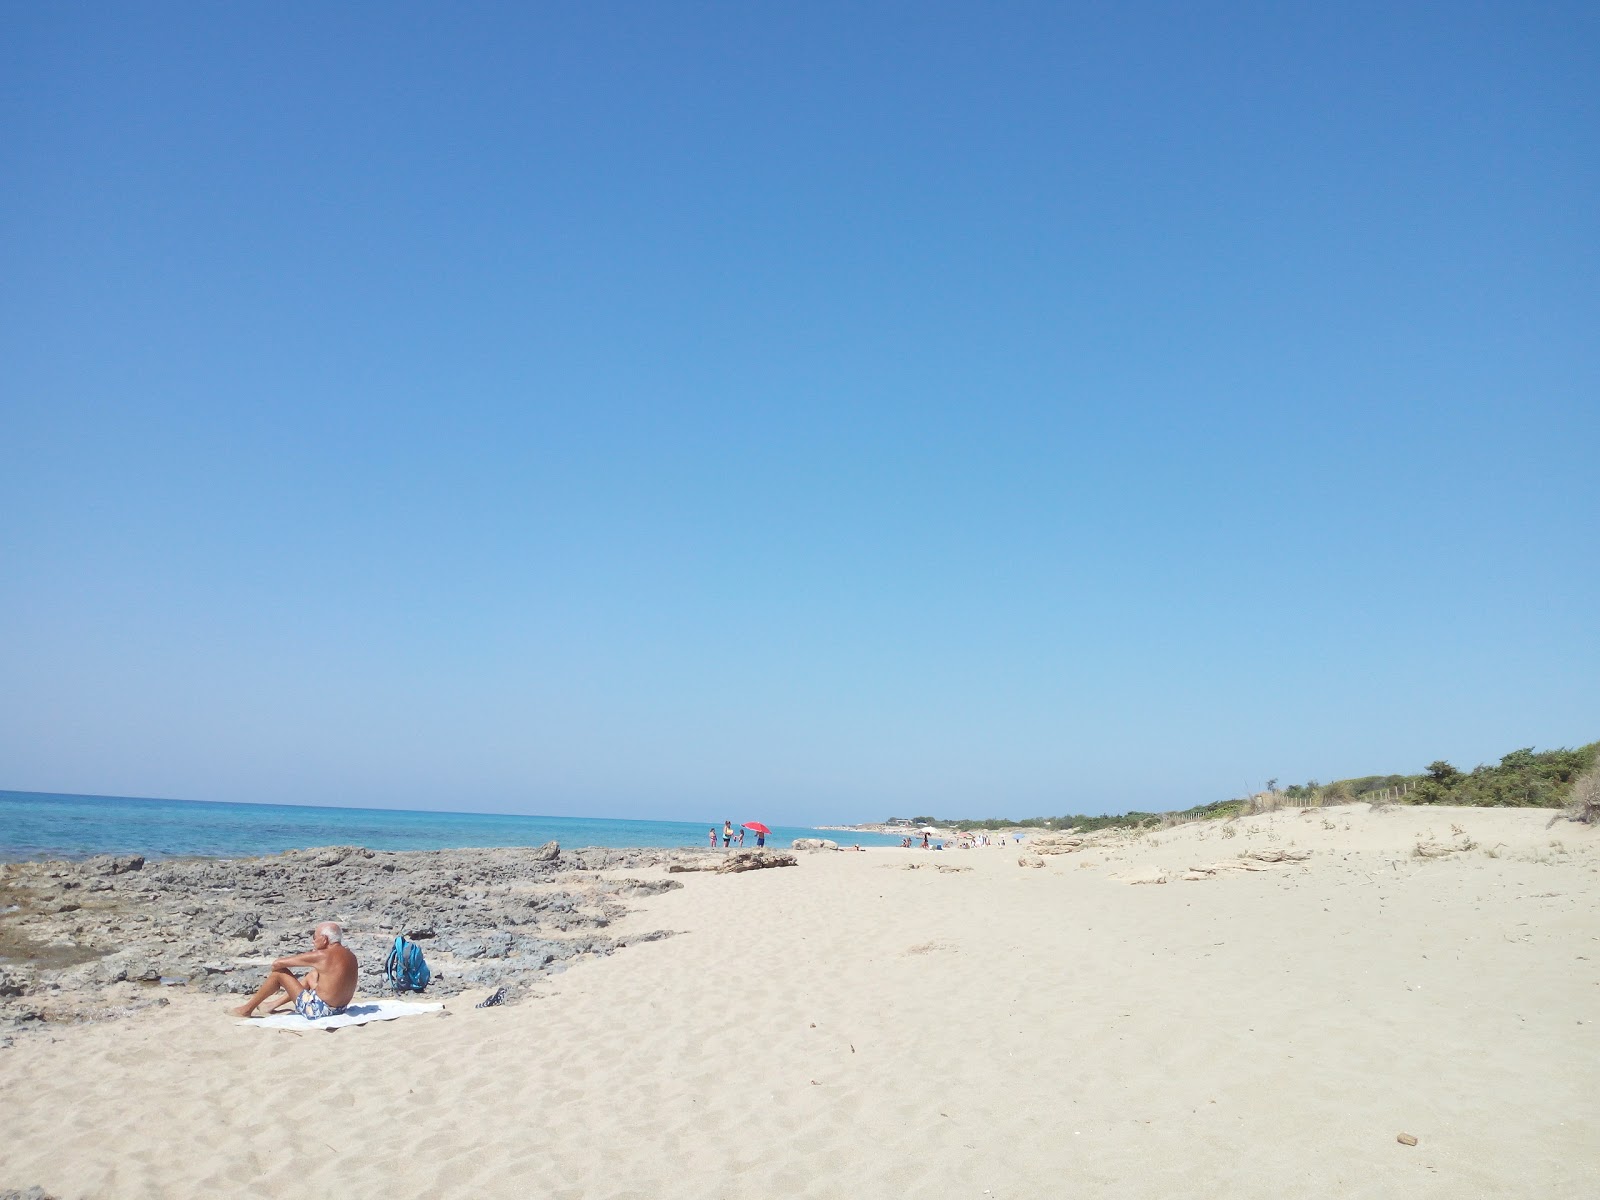 Foto von Spiaggia d'Ayala befindet sich in natürlicher umgebung